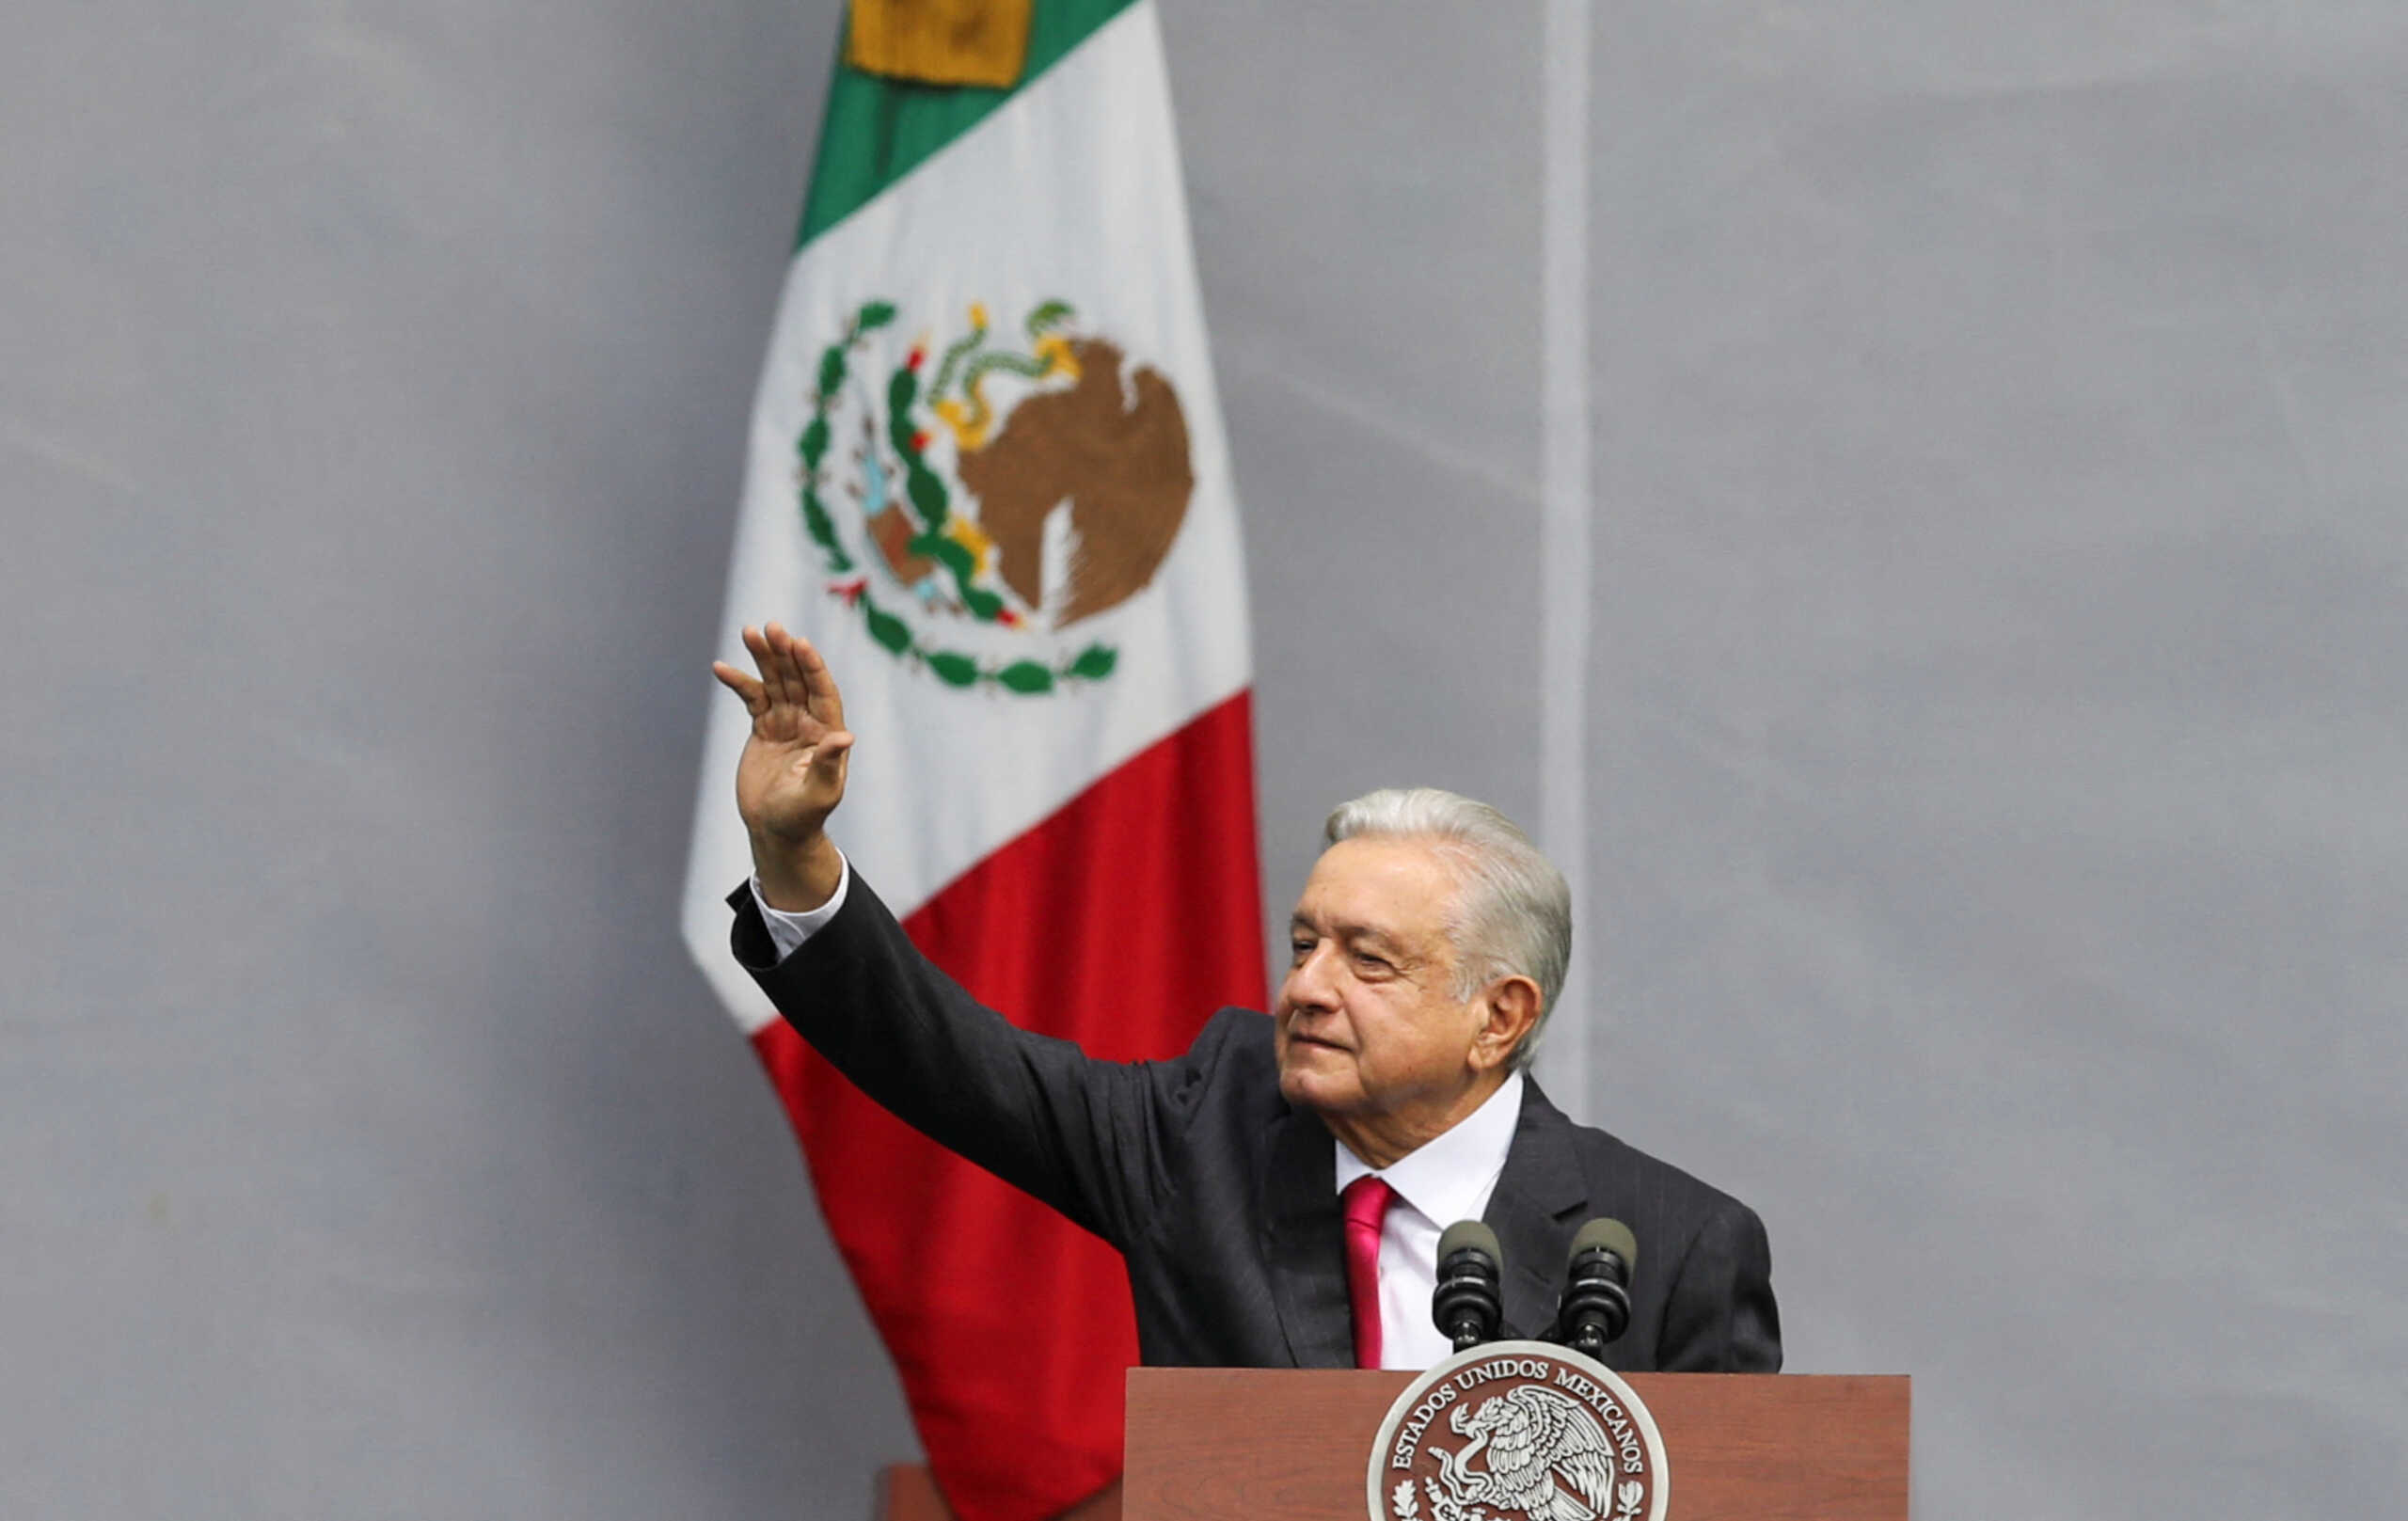 Μεξικό: Κόντρα κυβέρνησης – Ανωτάτου δικαστηρίου για την εκλογική μεταρρύθμιση που προώθησε ο Ομπραδόρ